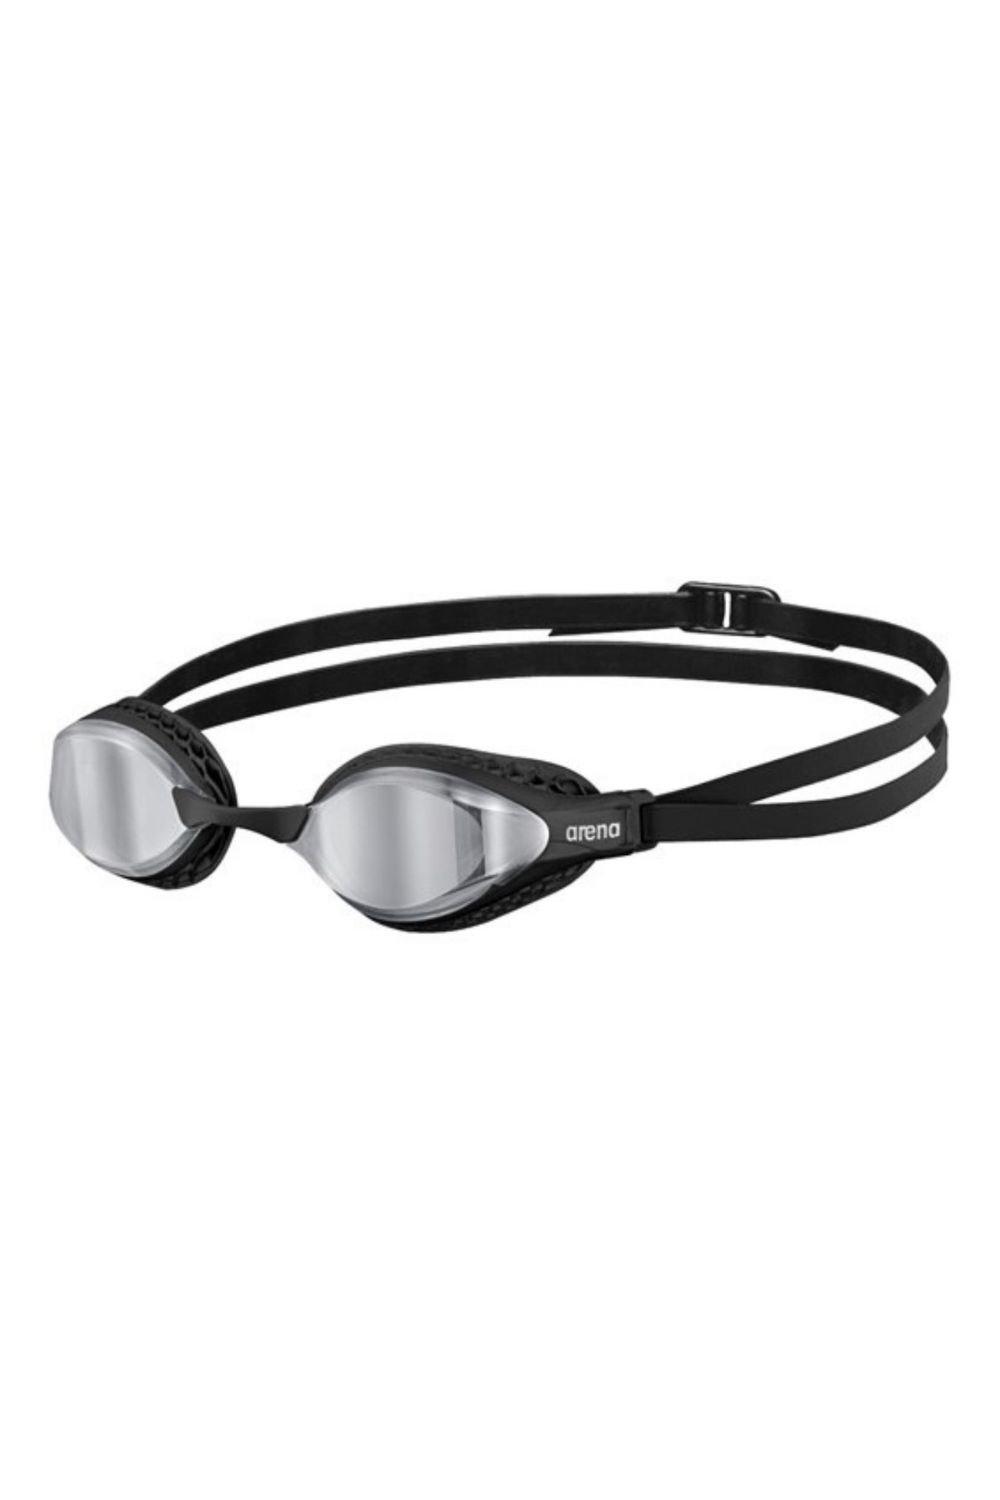 Очки для плавания с зеркалом Airspeed Arena, черный очки для плавания с зеркалом airspeed arena серебро